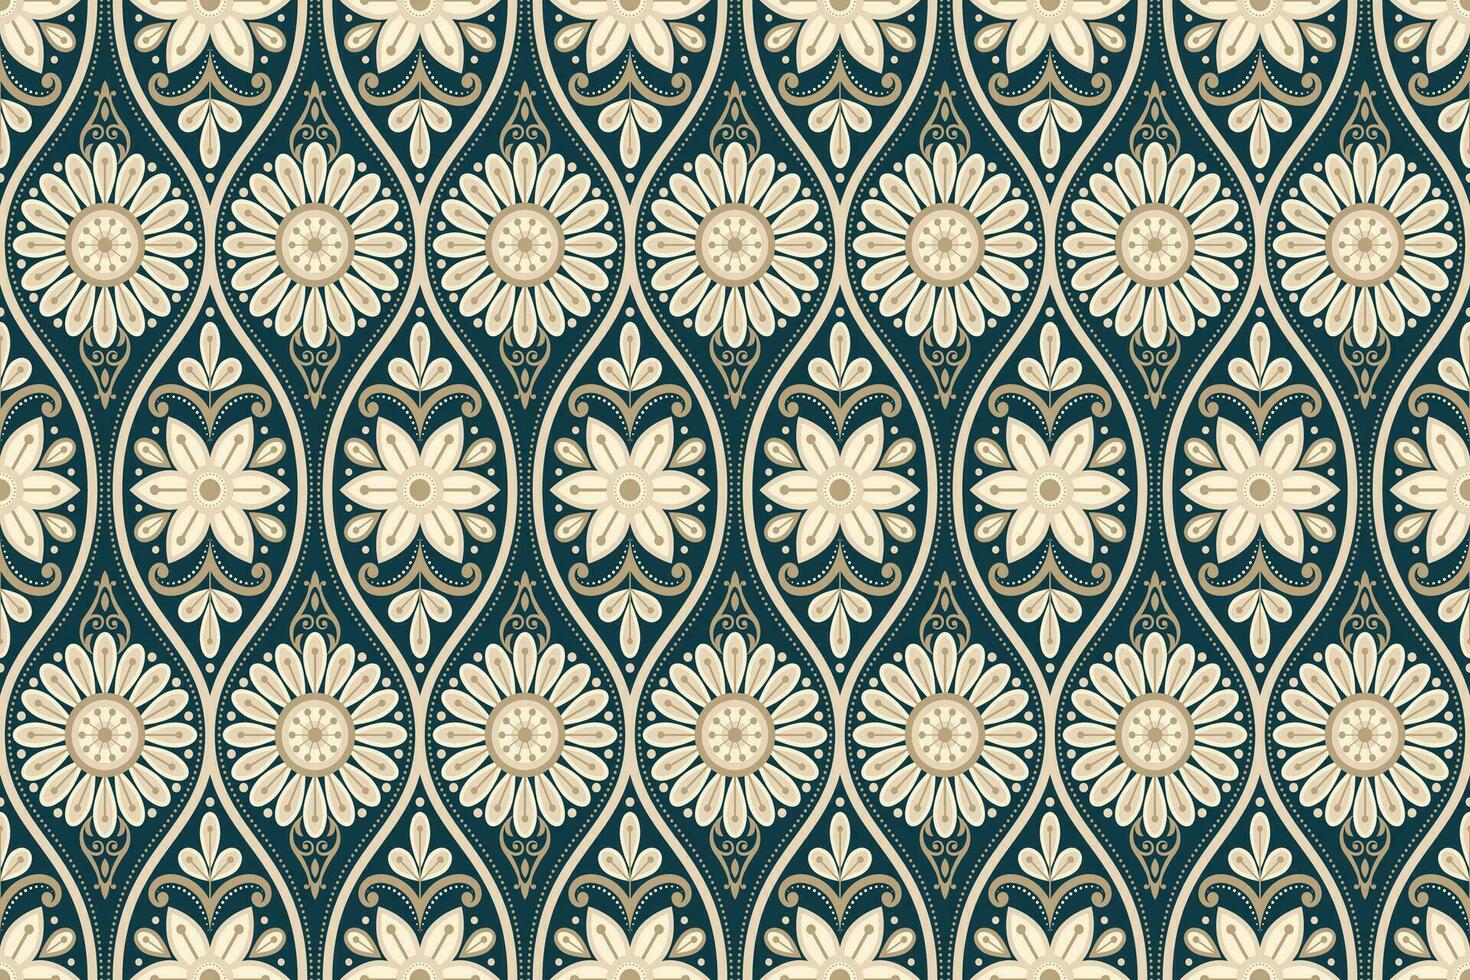 bloemen naadloos achtergrond. patroon meetkundig etnisch kant patroon ontwerp bloemen borduurwerk voor textiel kleding stof het drukken behang tapijt. borduurwerk nek vector